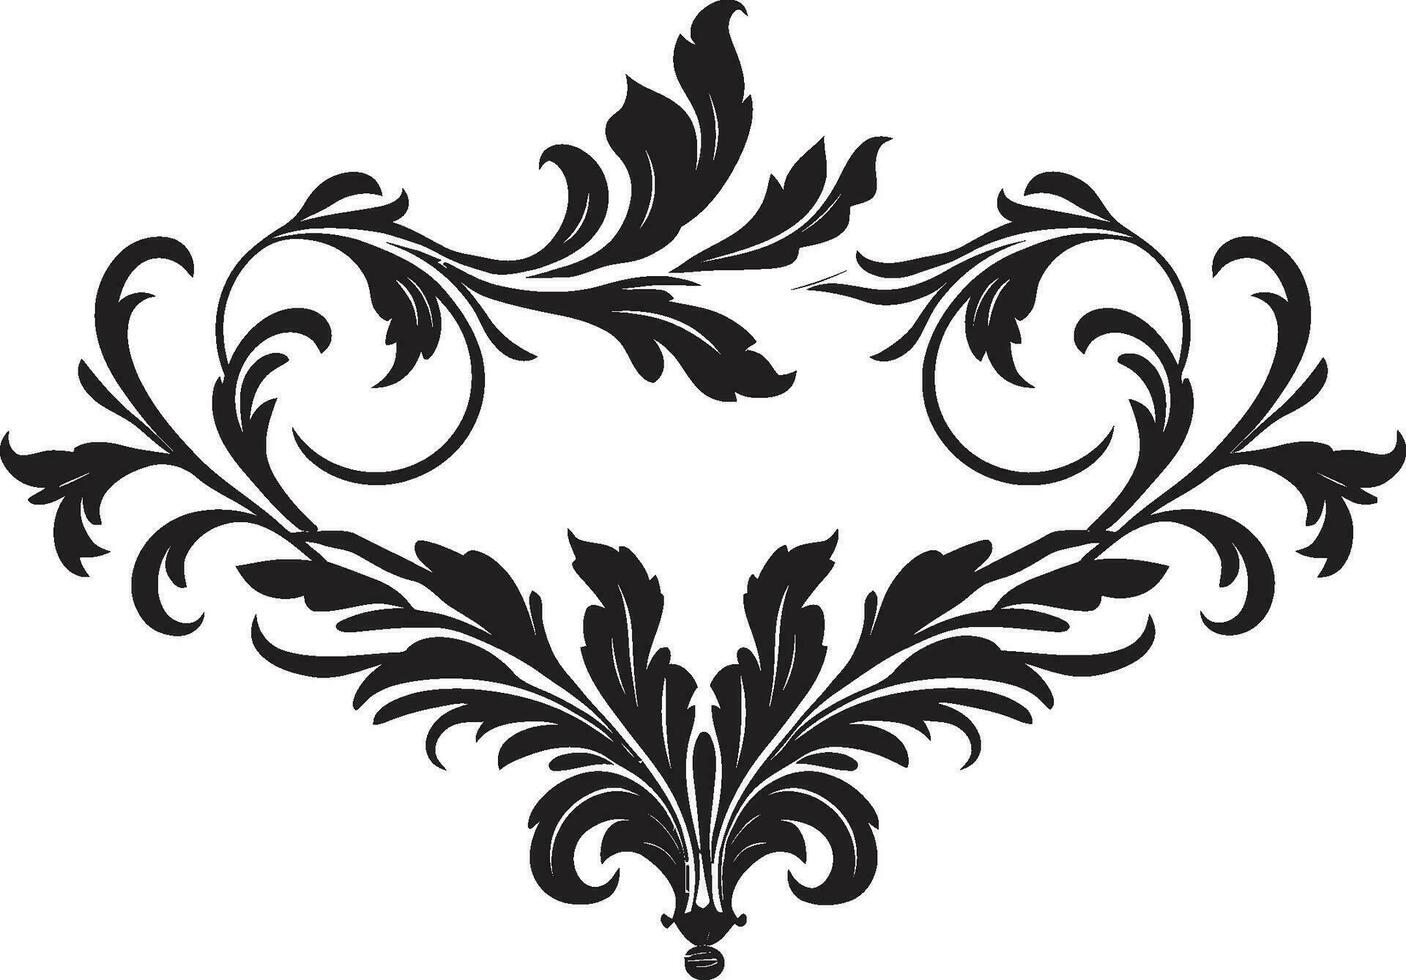 slösa buketter svartvit hantverk med en kunglig dekorativ Rör ädel elegans vektor av svart dekorativ förträfflighet för royalty